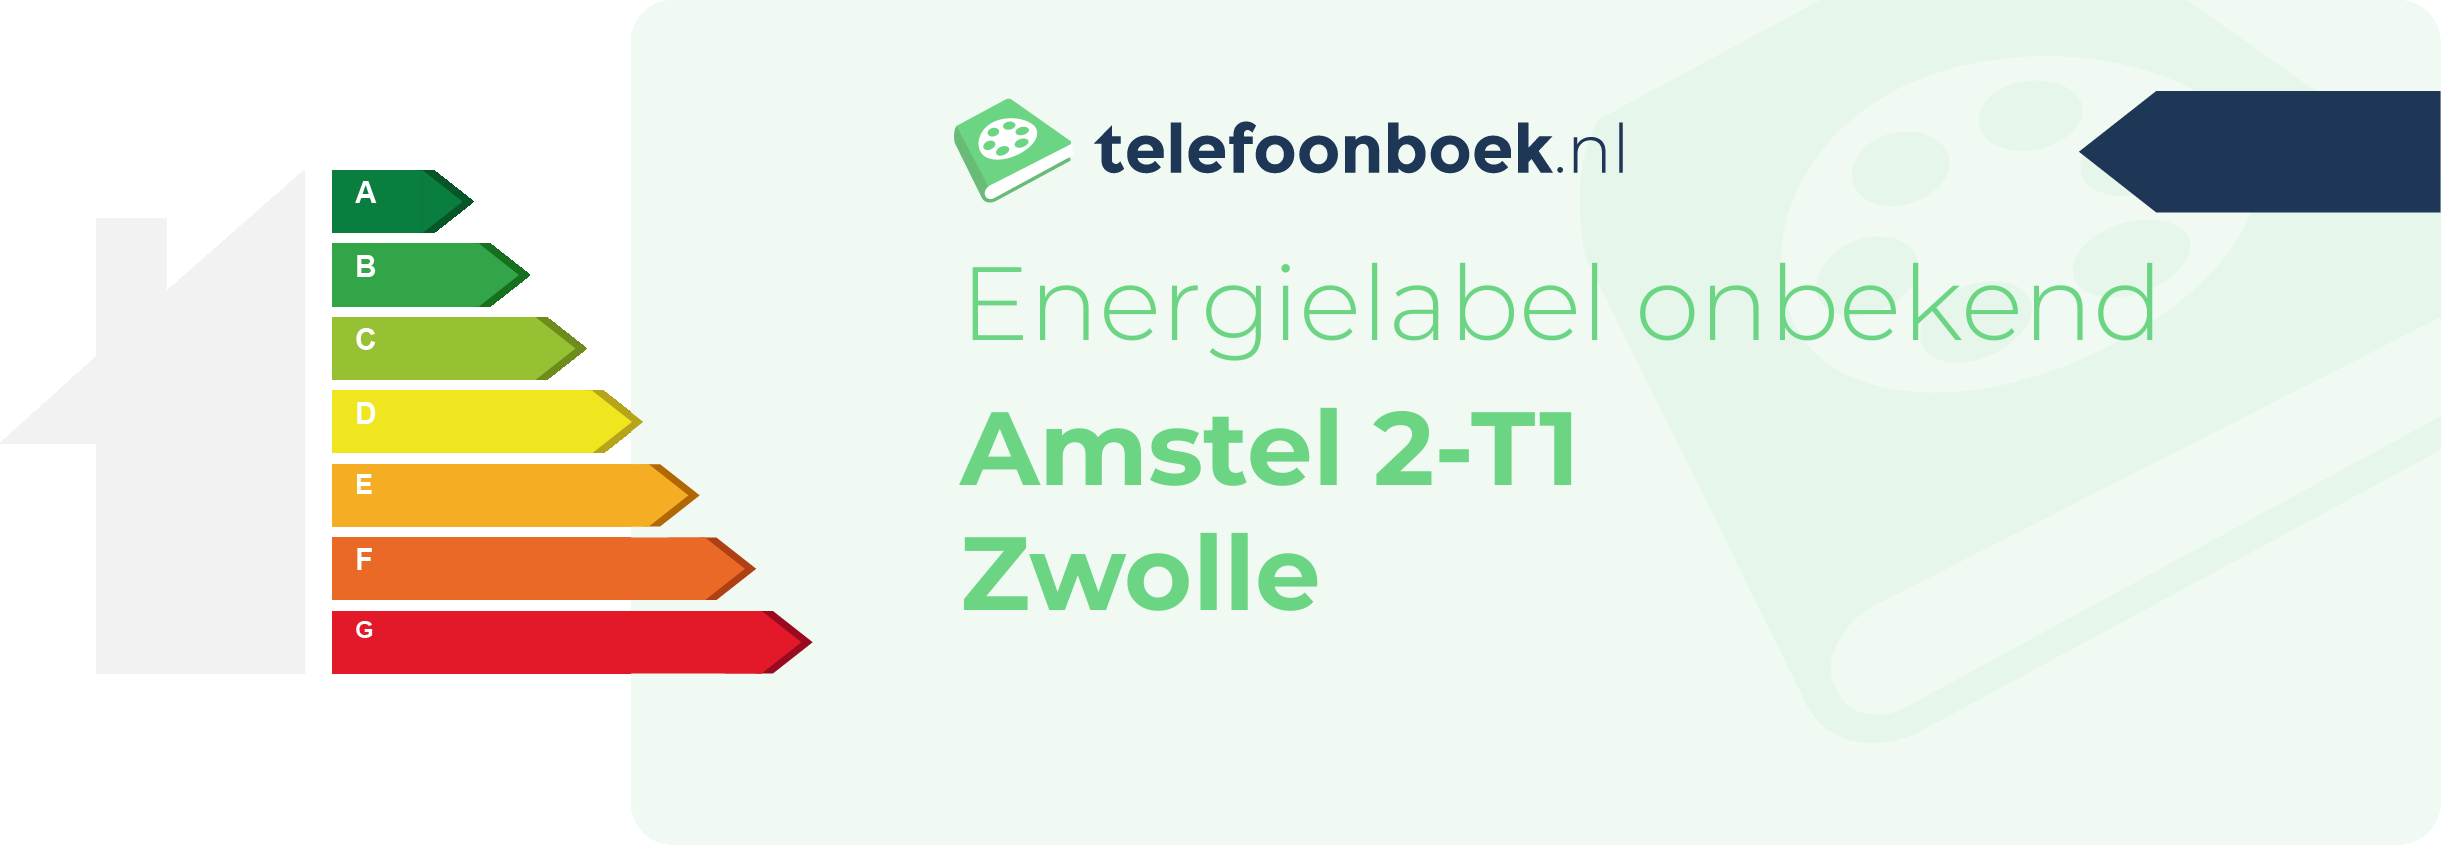 Energielabel Amstel 2-T1 Zwolle